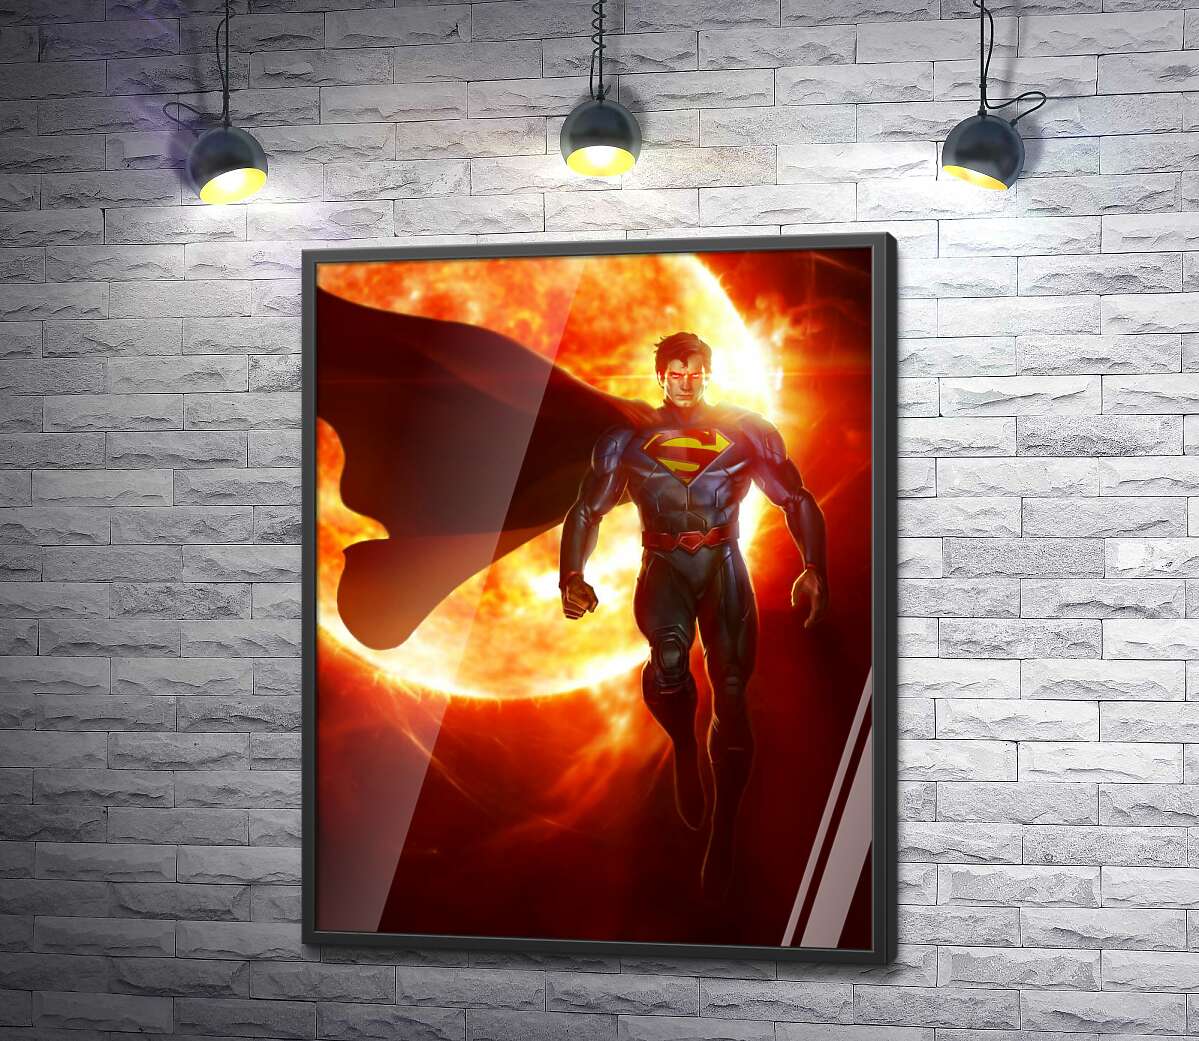 постер Супермен (Superman) на фоне раскаленного солнечного шара